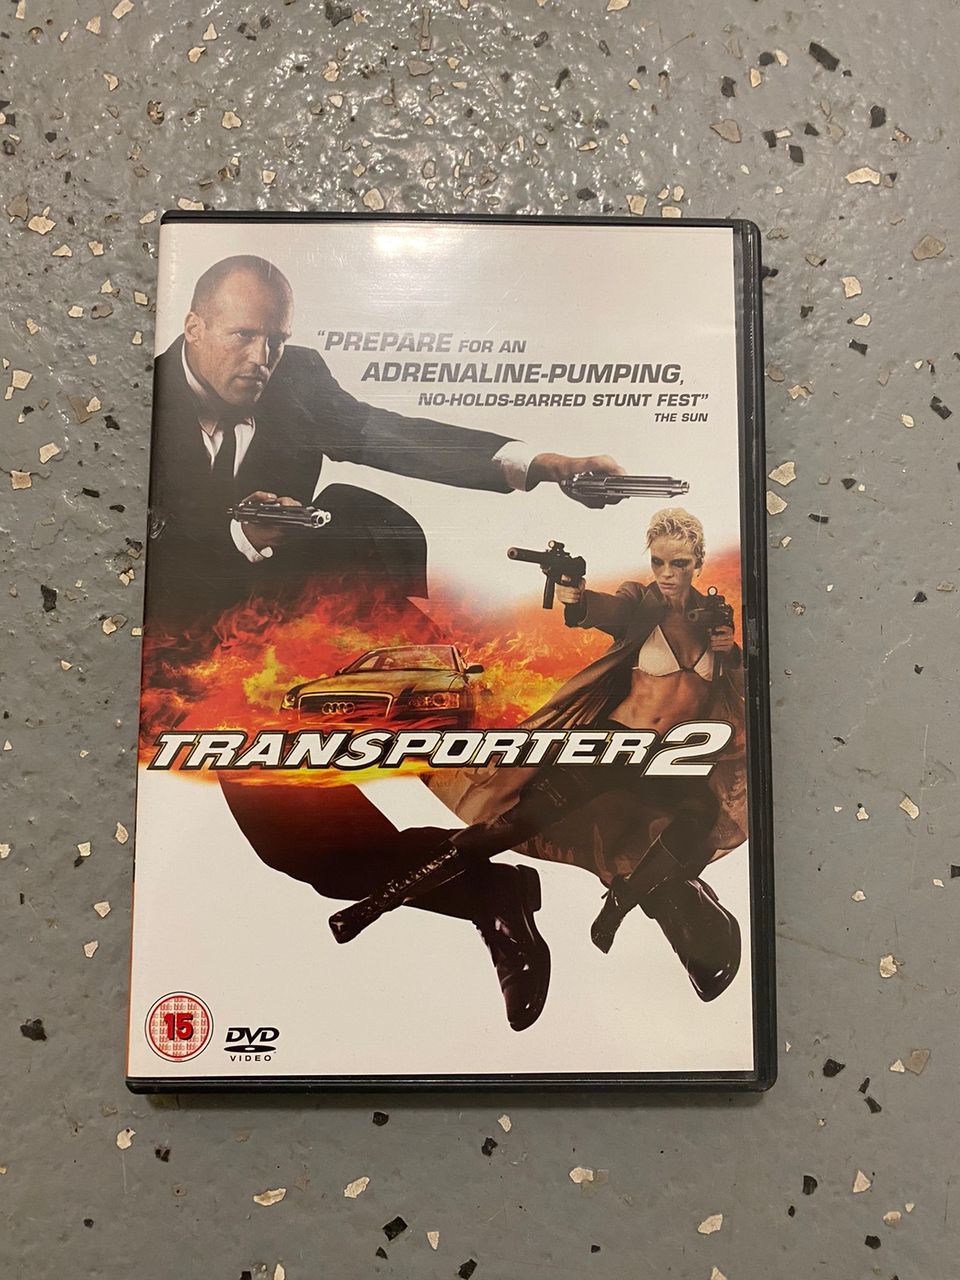 Transporter 2 dvd